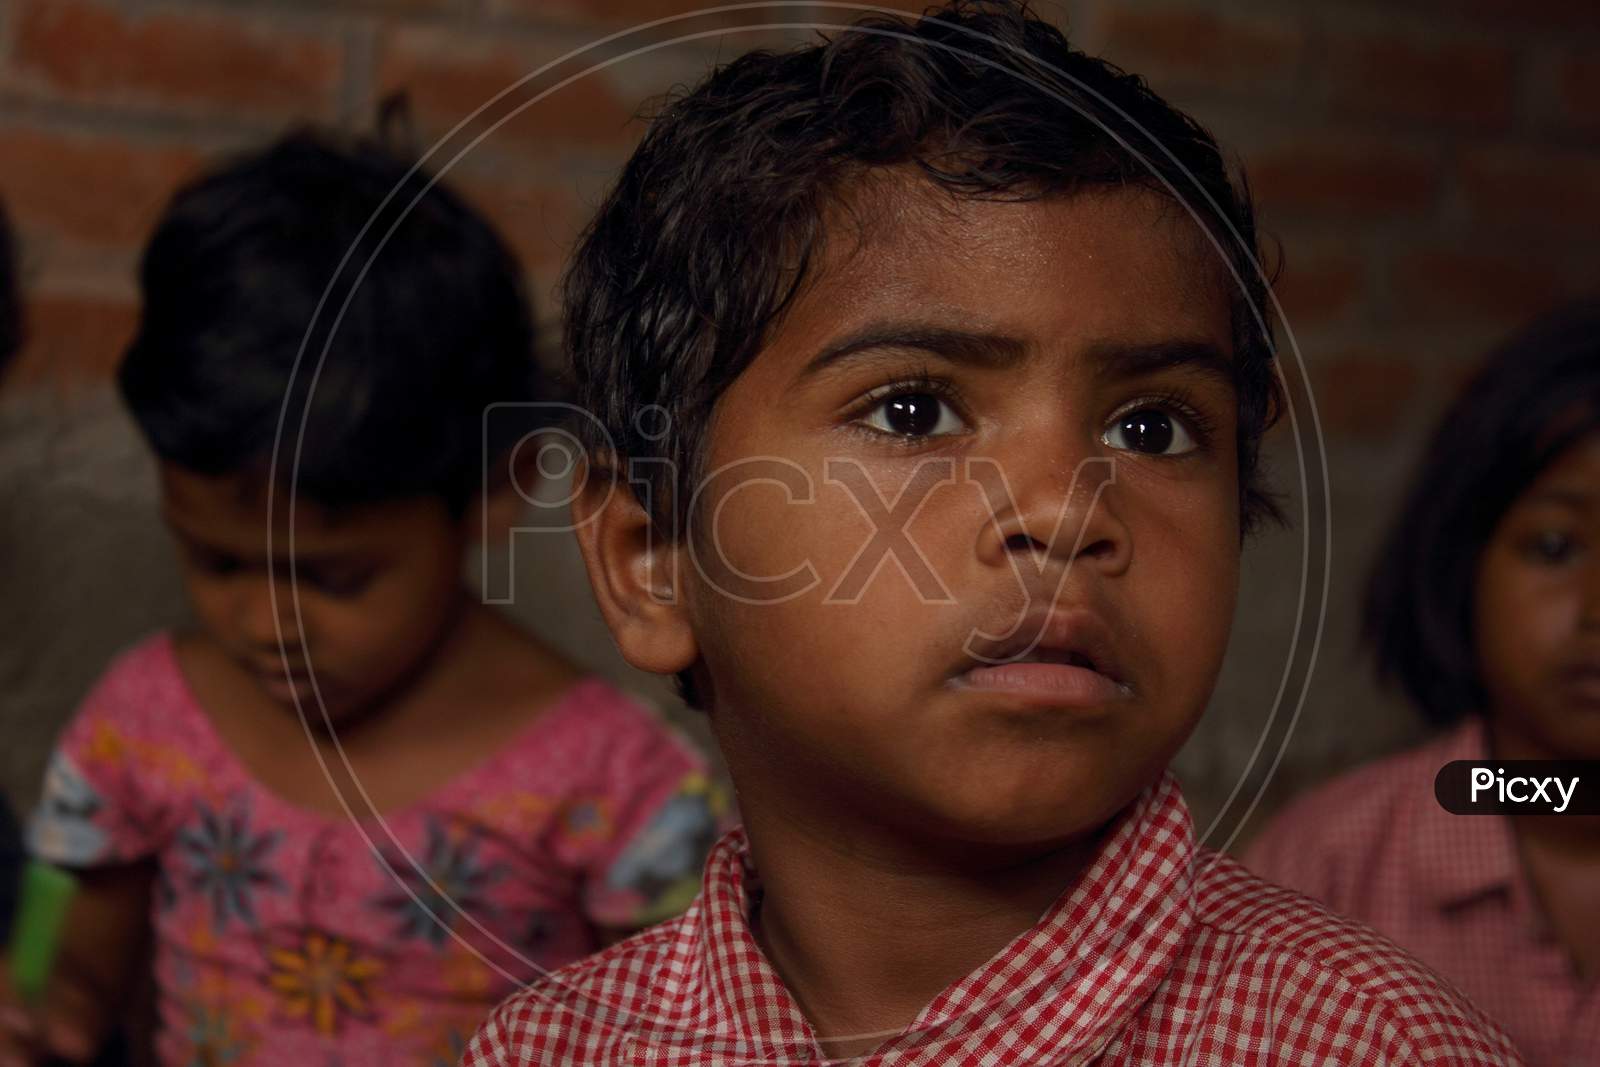 Portrait of a Rural Kid in School Dress